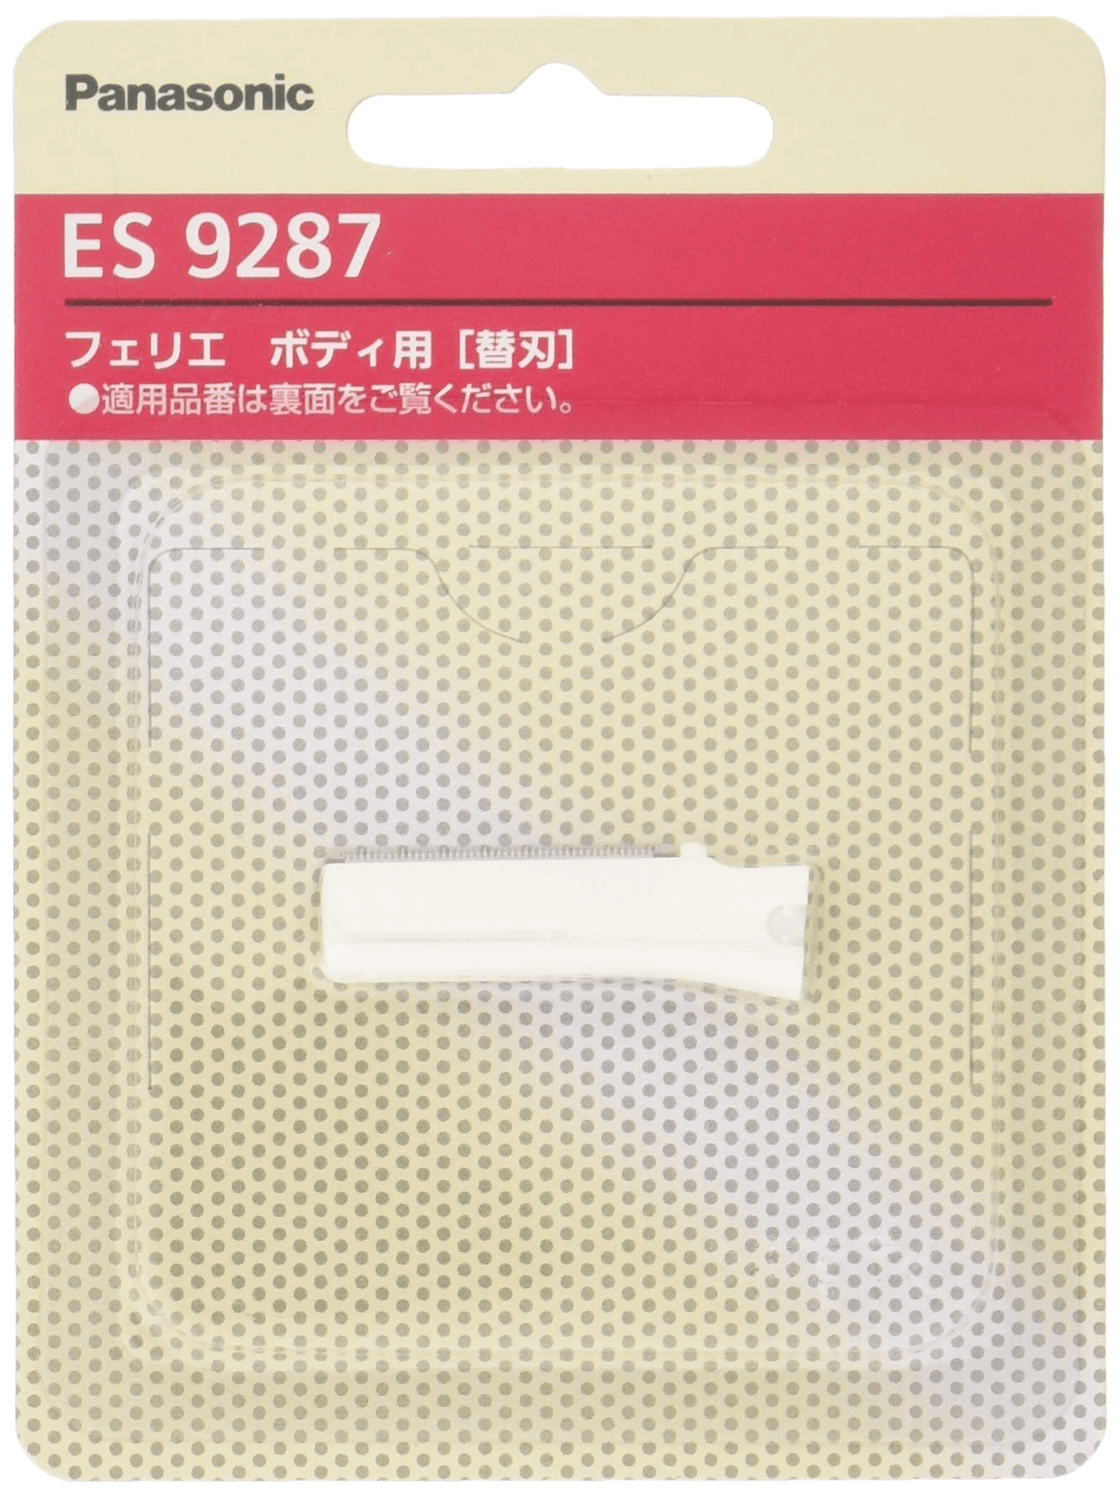 Panasonic ES9287 パナソニック フェリエ ウブ毛用 ボディ用